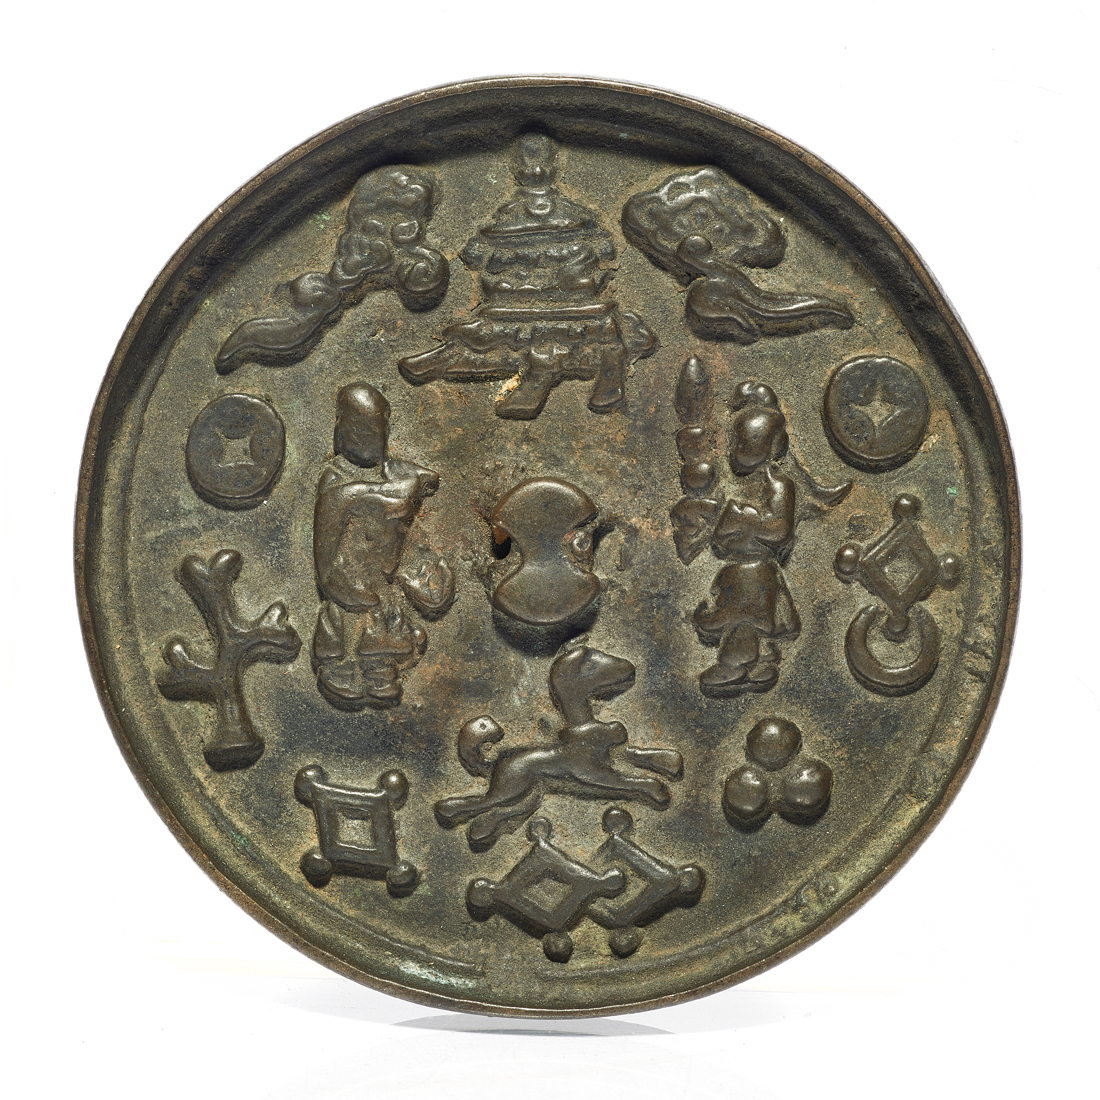 CHINESE BRONZE MIRROR Chinese bronze